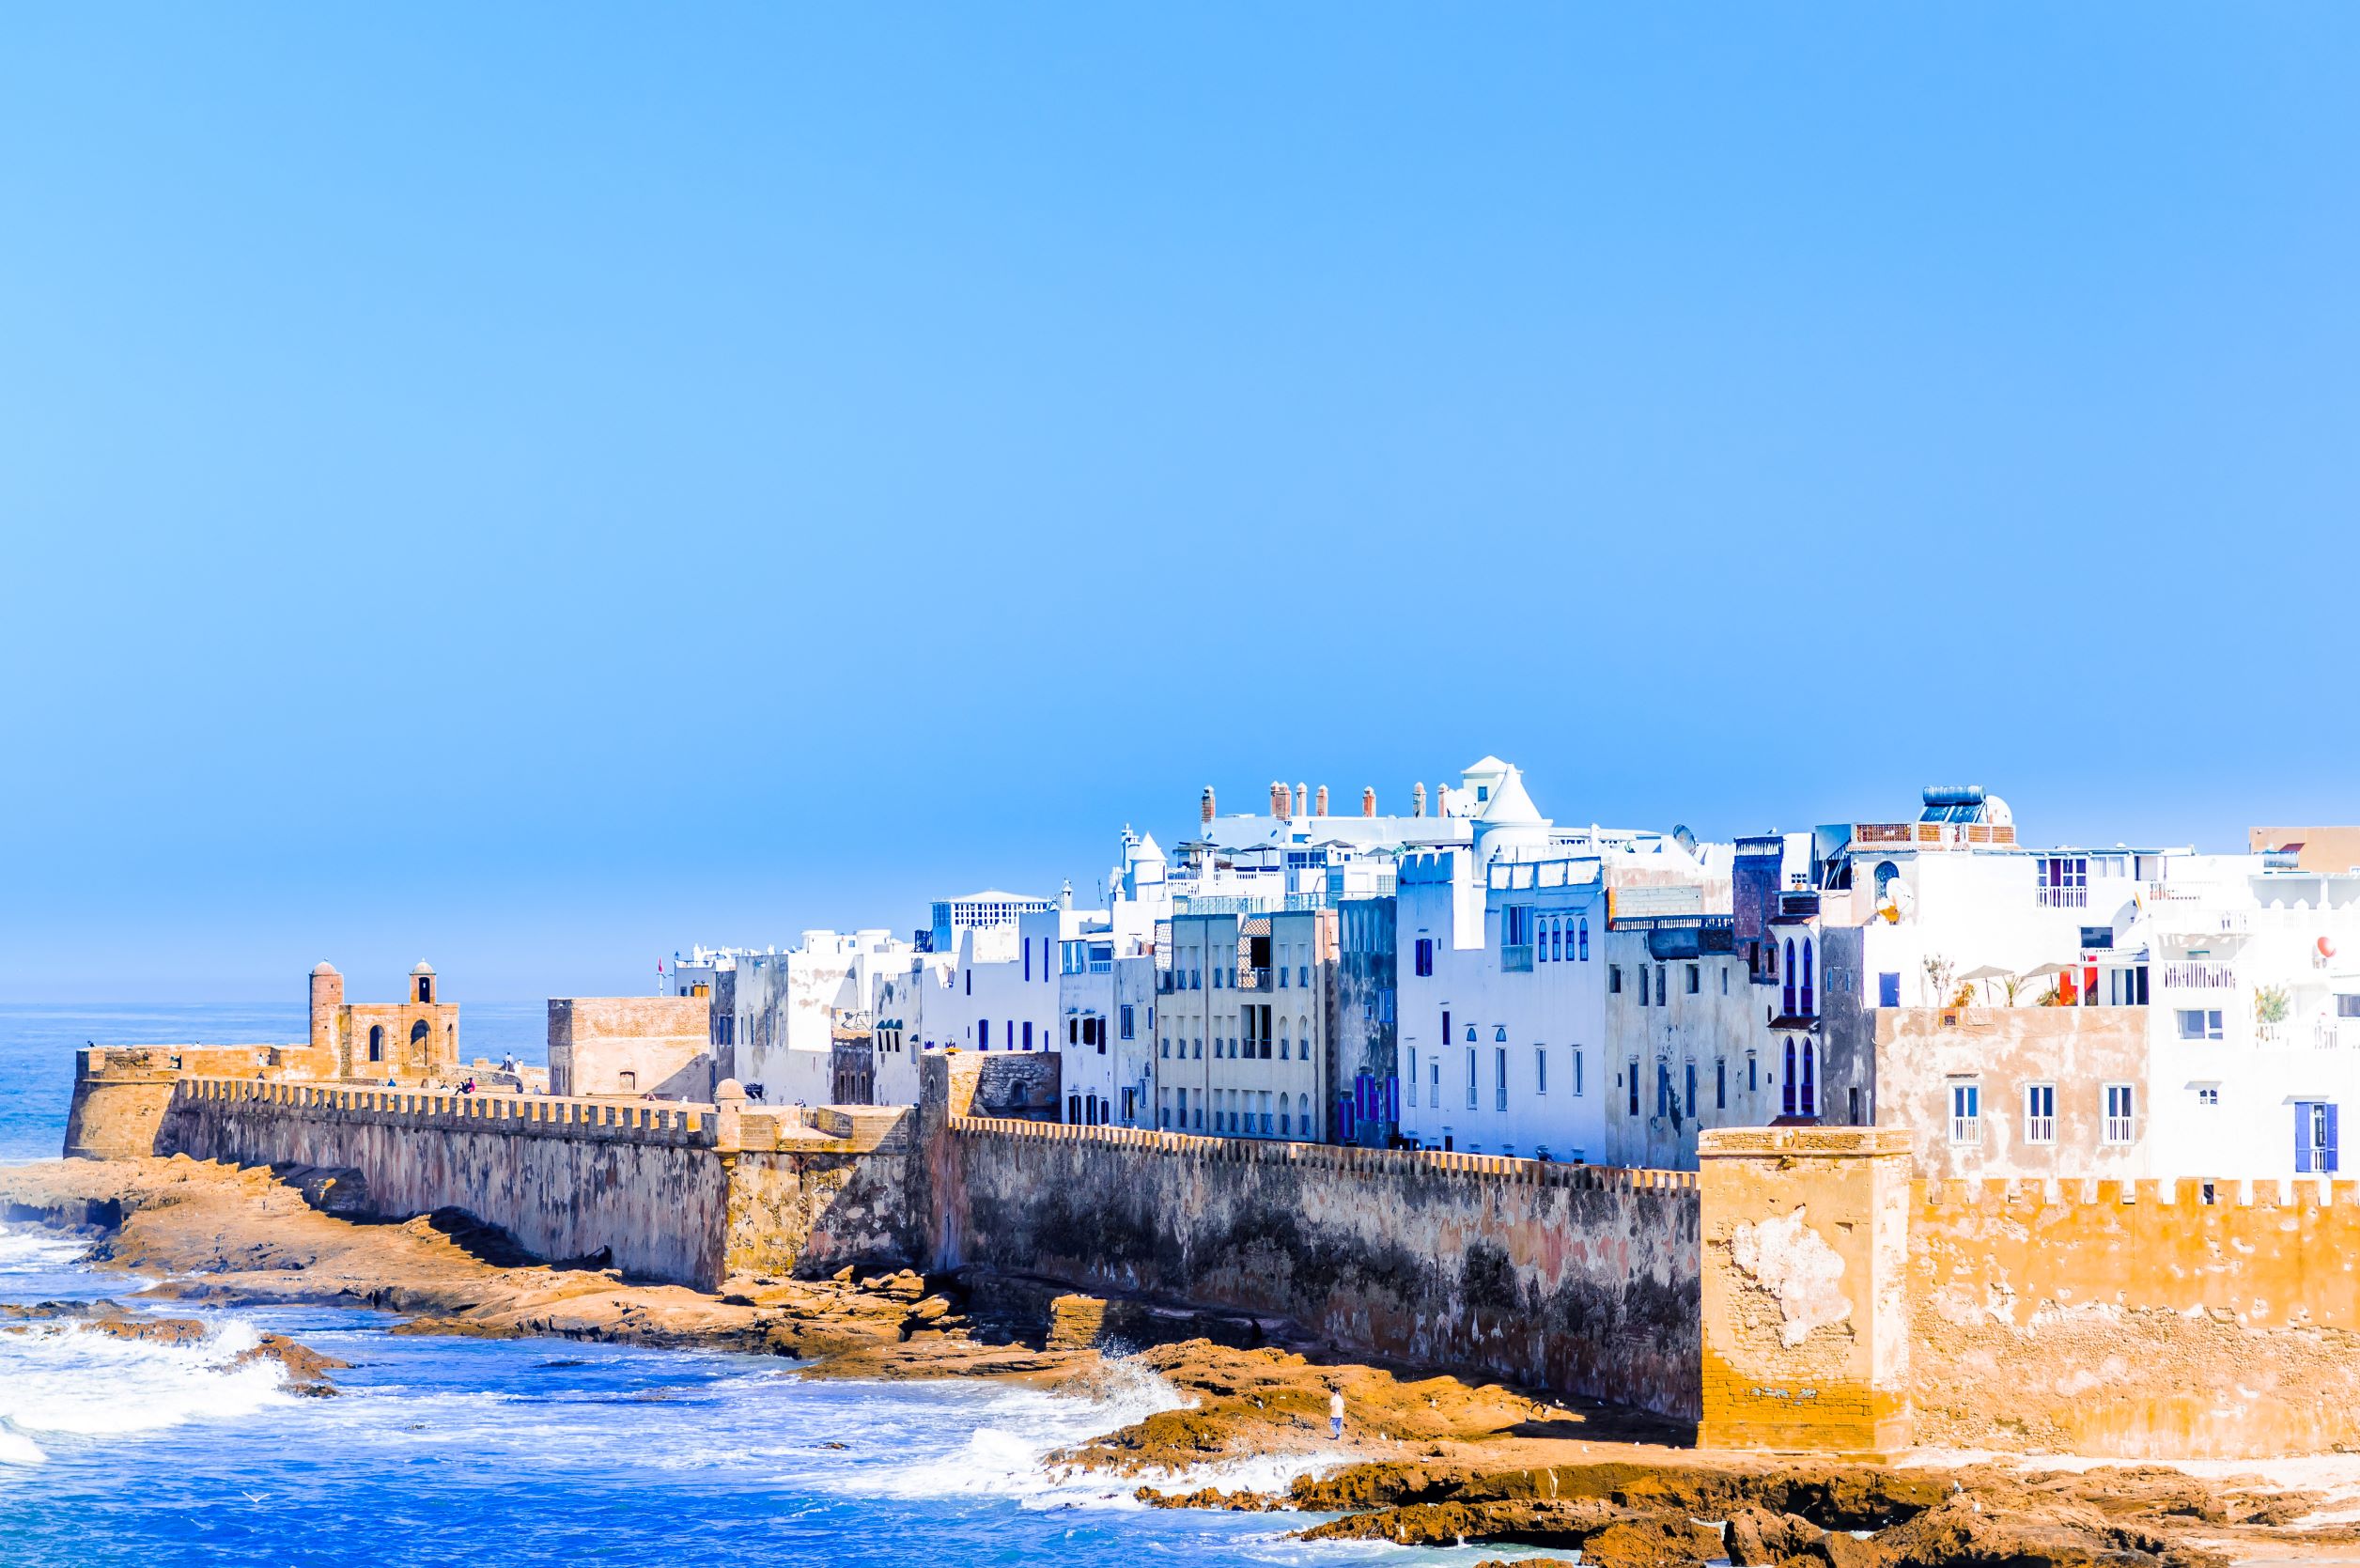 Les meilleurs hôtels avec piscine à débordement d’Essaouira 